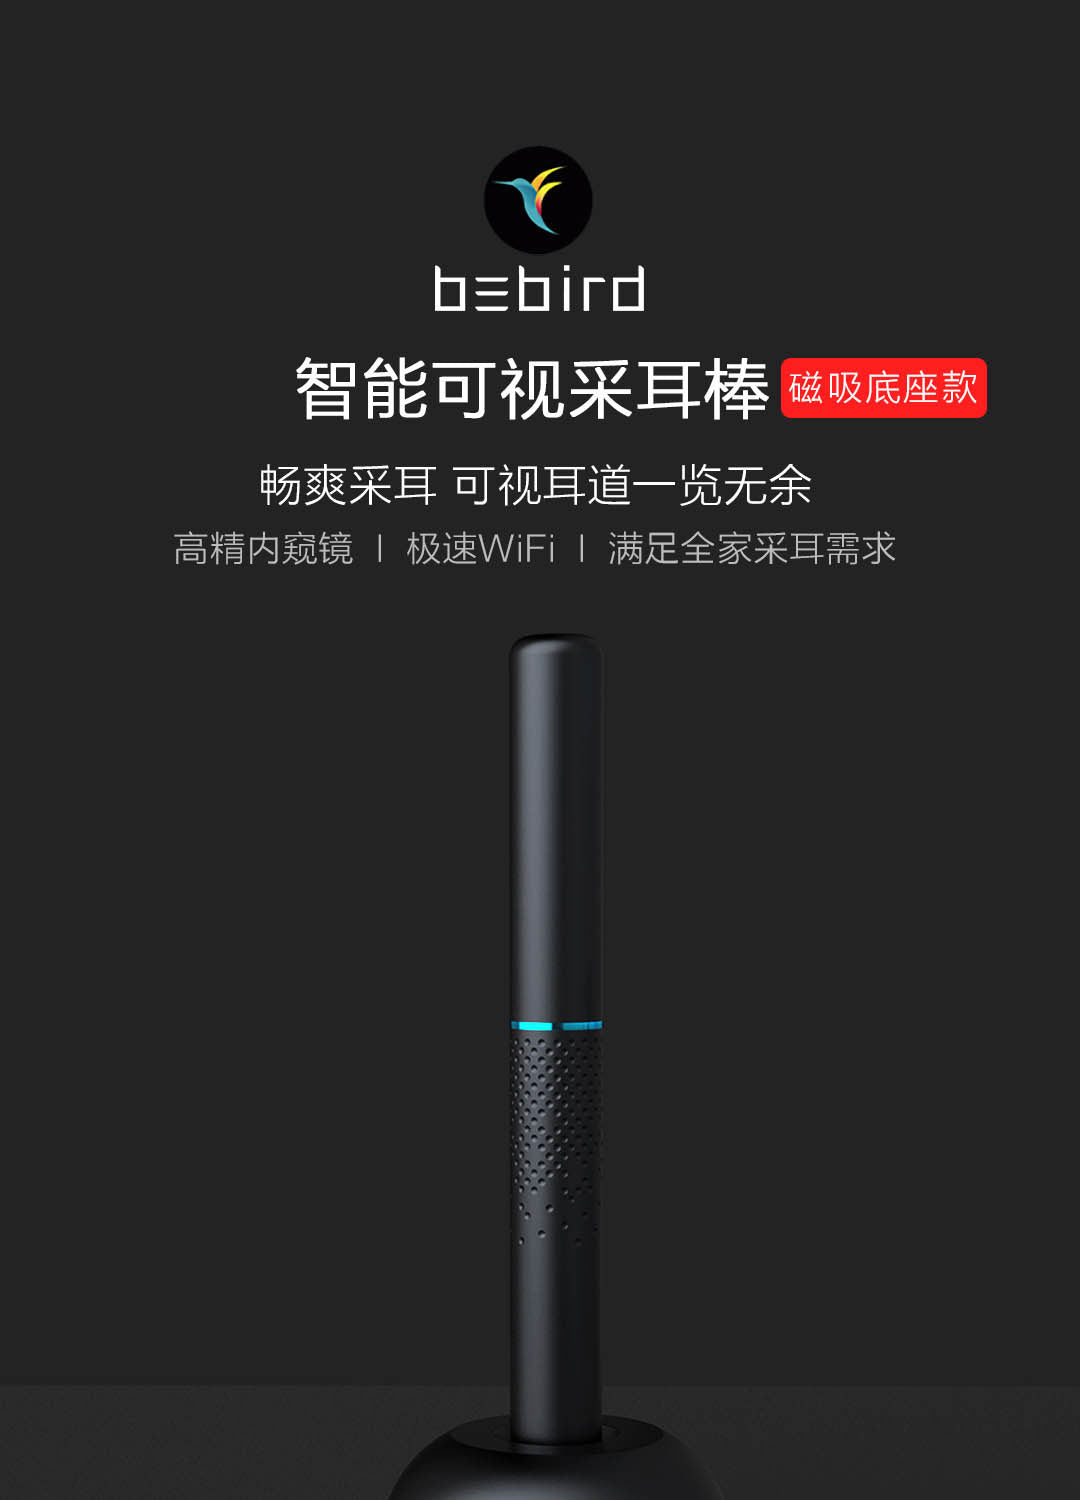 Bebird智能可视采耳棒M9 Pro